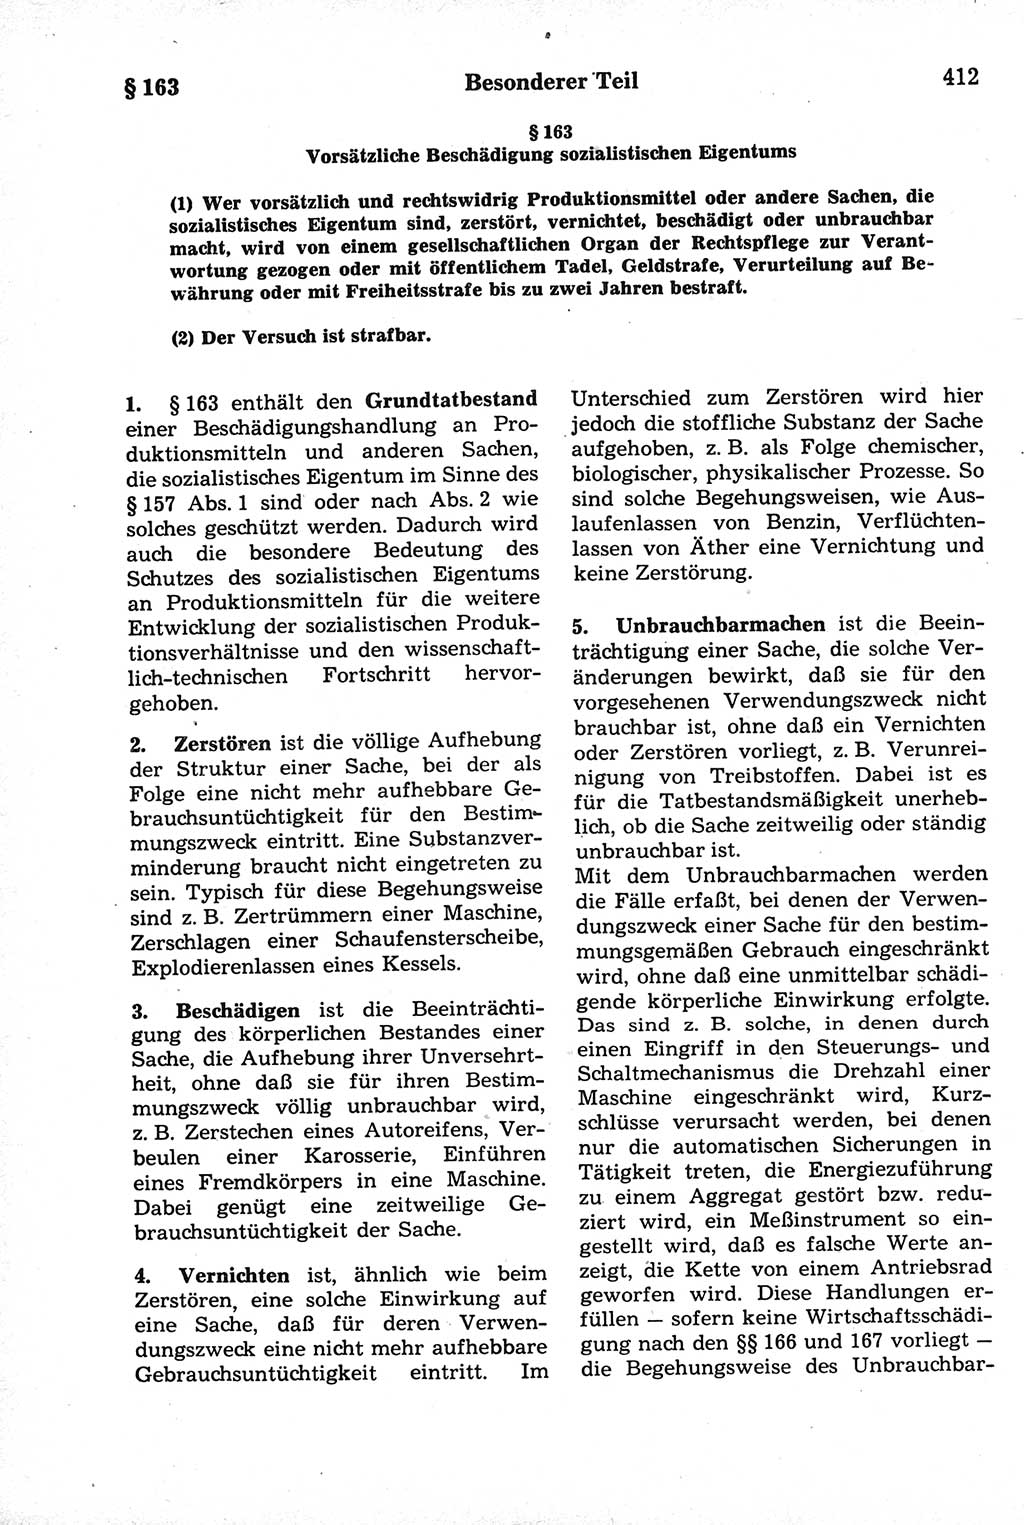 Strafrecht der Deutschen Demokratischen Republik (DDR), Kommentar zum Strafgesetzbuch (StGB) 1981, Seite 412 (Strafr. DDR Komm. StGB 1981, S. 412)